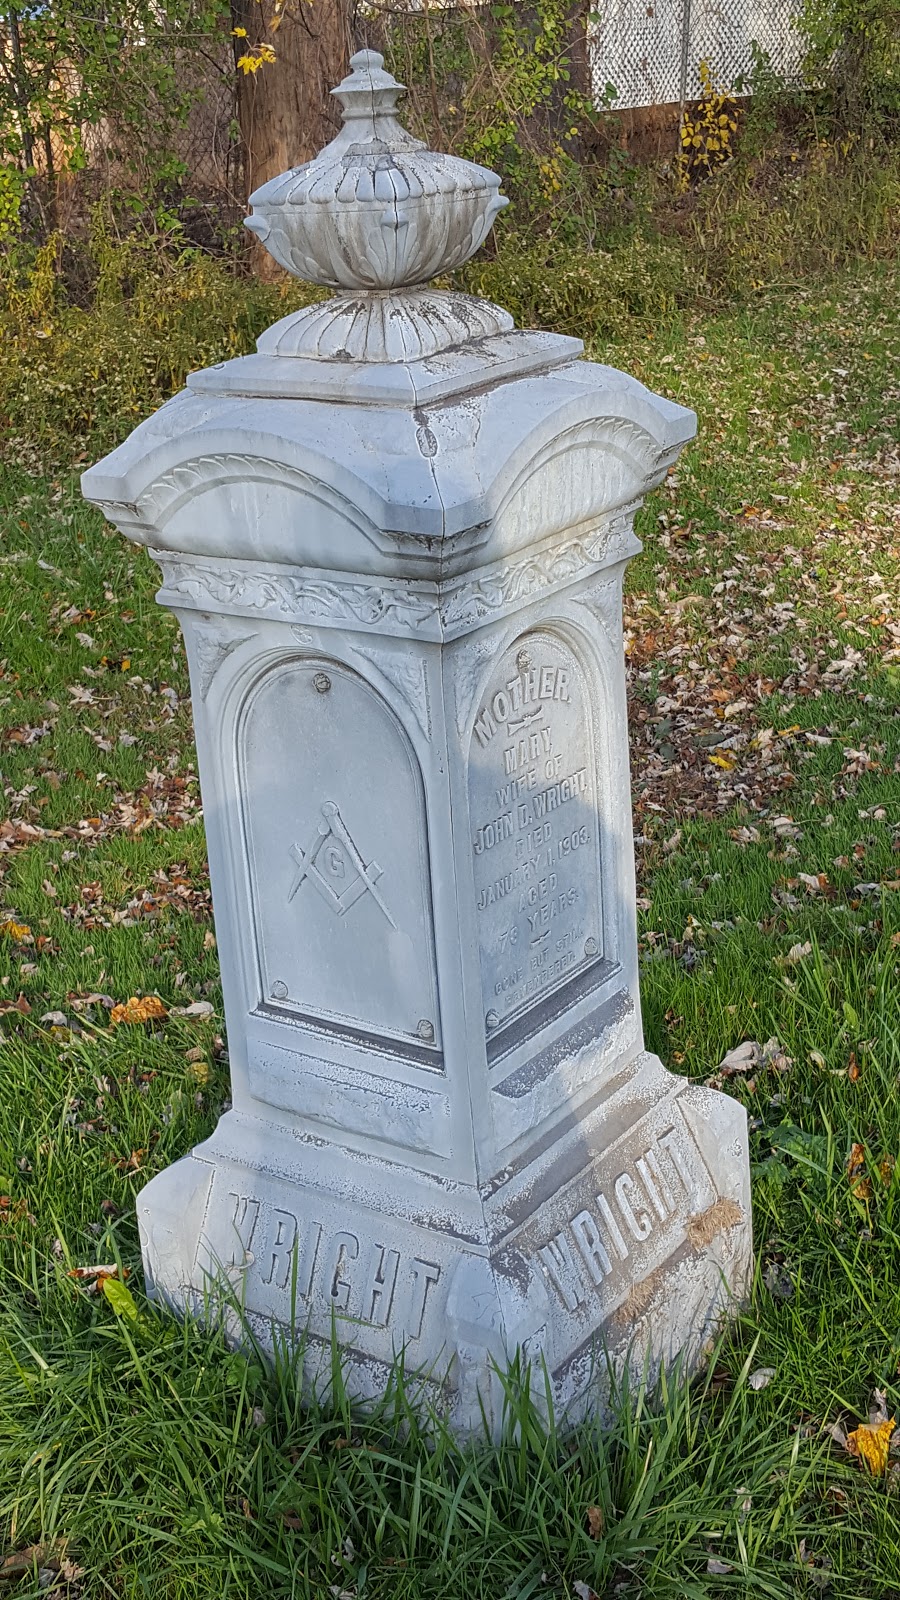 Concordia Cemetery | 438 Walden Ave, Buffalo, NY 14211 | Phone: (716) 892-2909